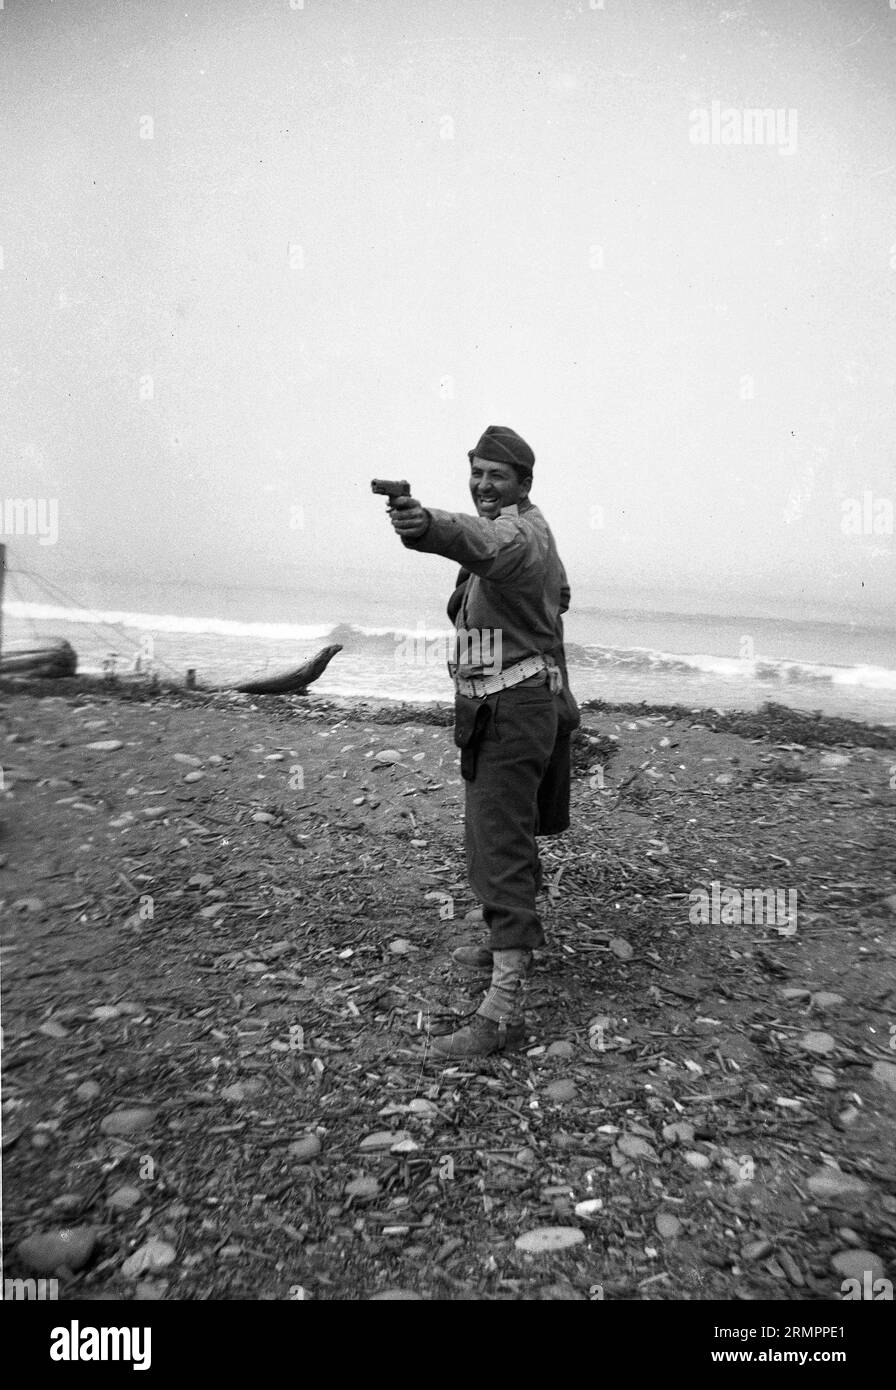 Solider posiert und lacht, während er 1911 .45 Pistole in die Nähe des Ozeans zeigt. Mitglieder der 114. Infanteriedivision der US-Armee trainieren im Zweiten Weltkrieg gegen Deutschland in Europa. Stockfoto